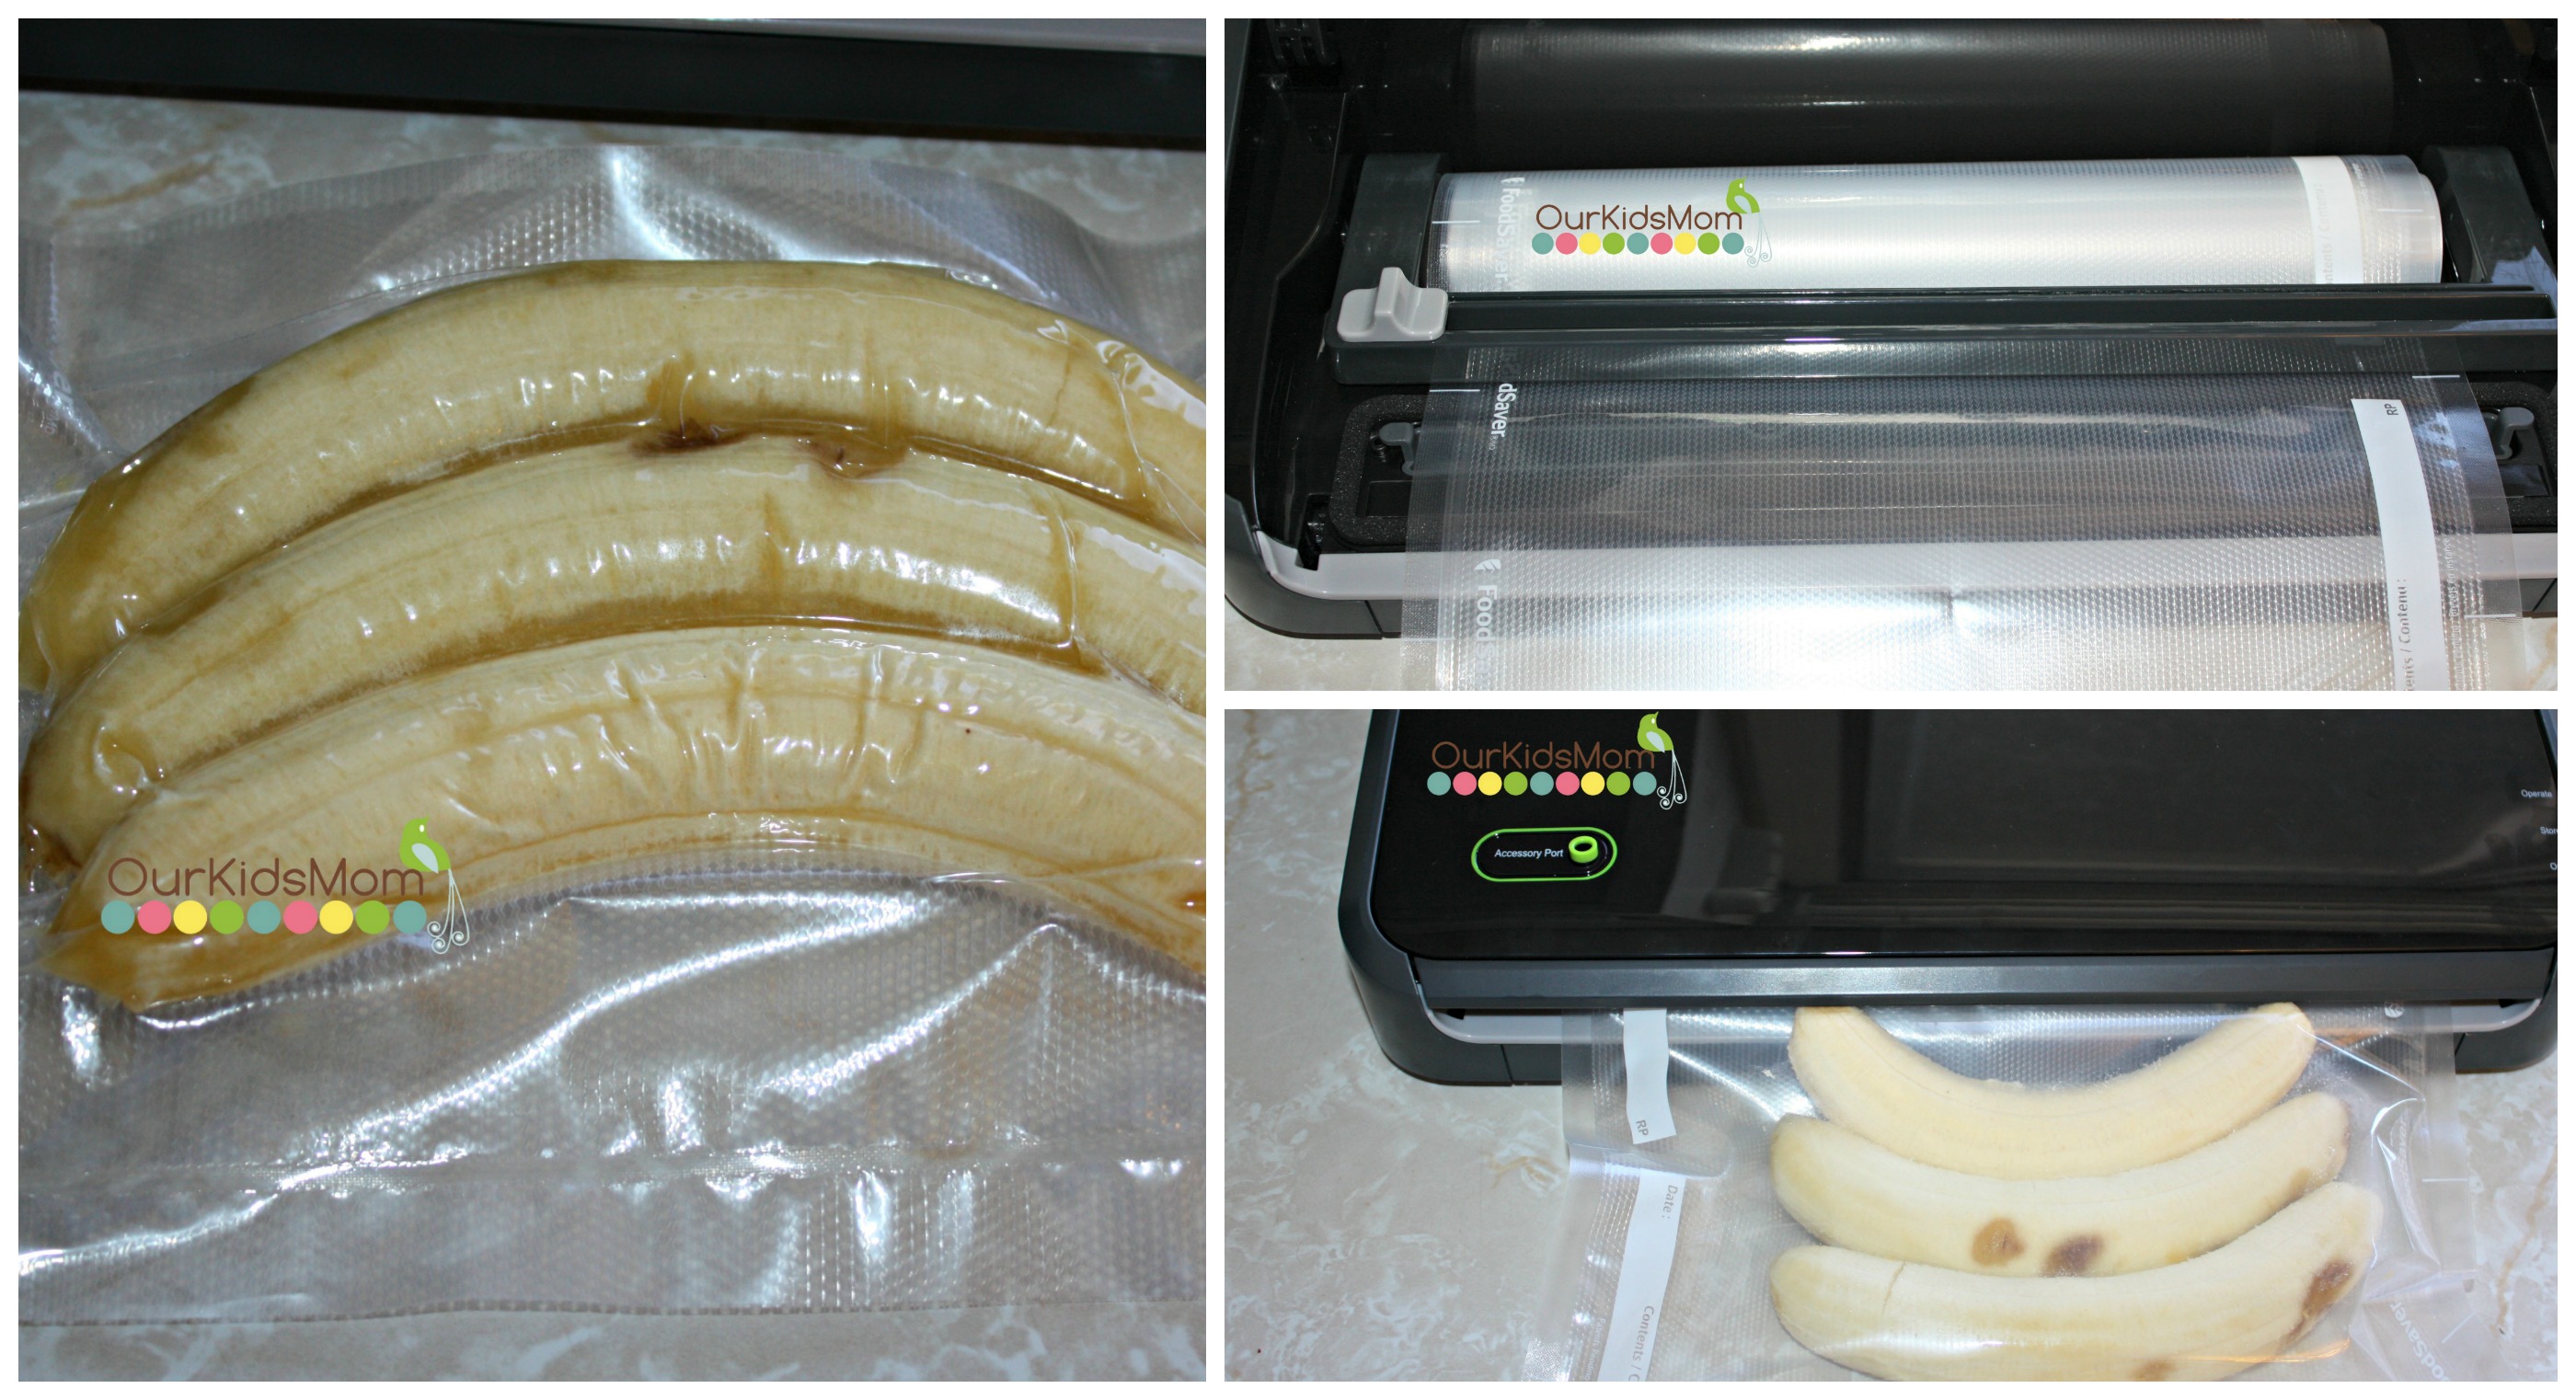 FoodSaver FM2100 Vacuum Sealing System for Food Preservation 